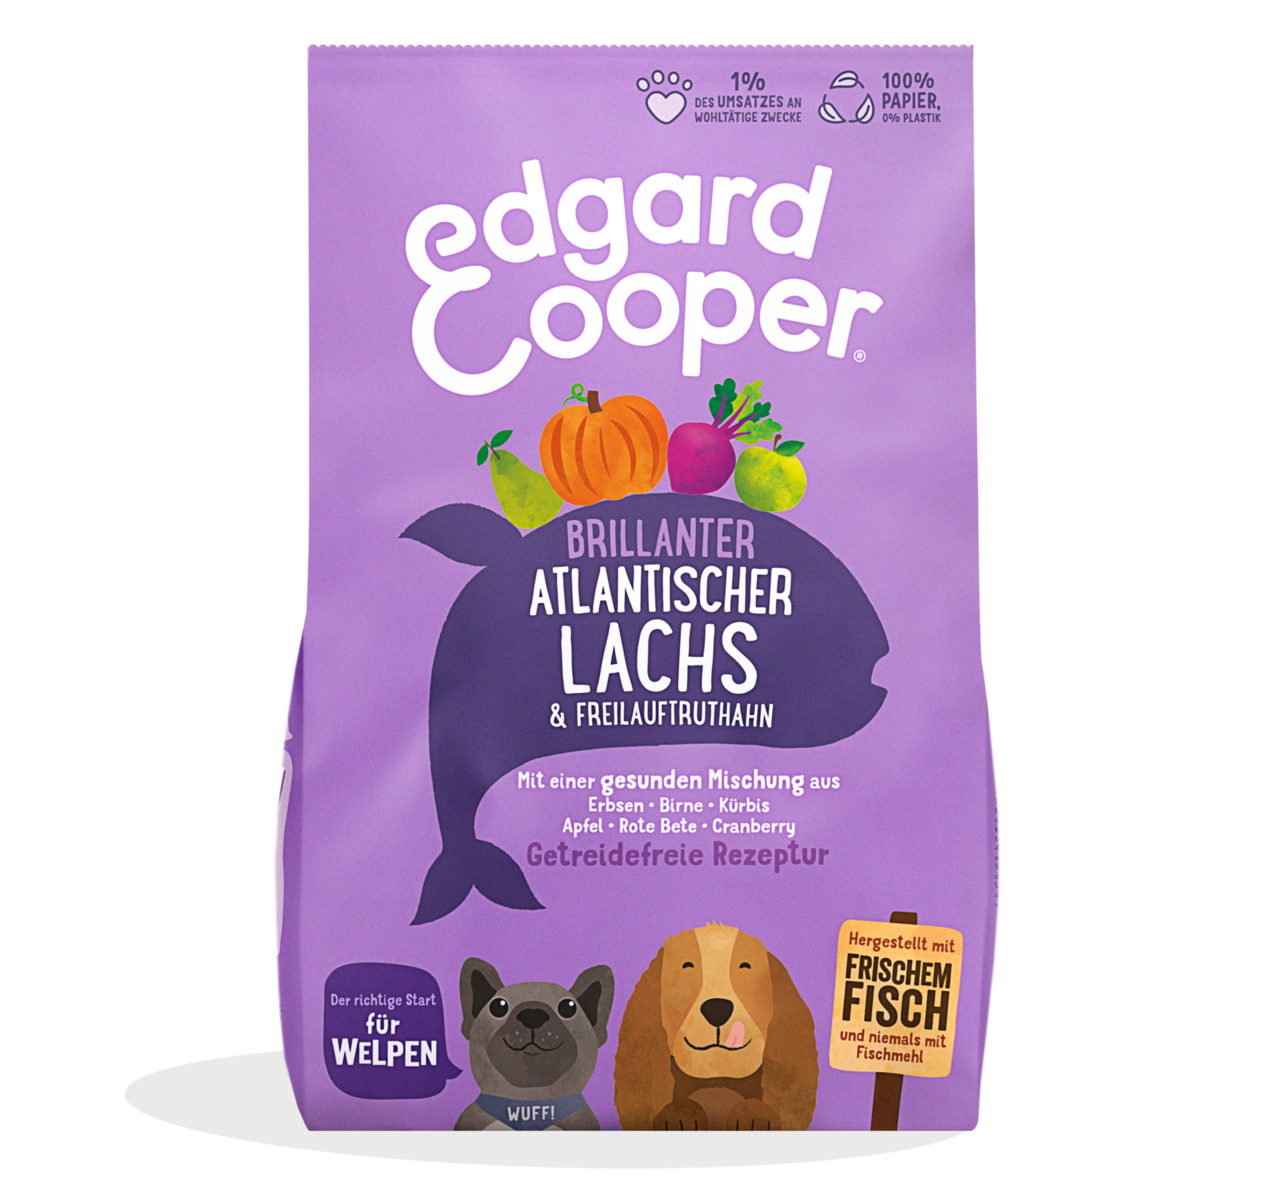 Edgard & Cooper Welpen brillanter atlantischer Lachs & Freilauftruthahn Junior Hunde Trockenfutter 7 kg